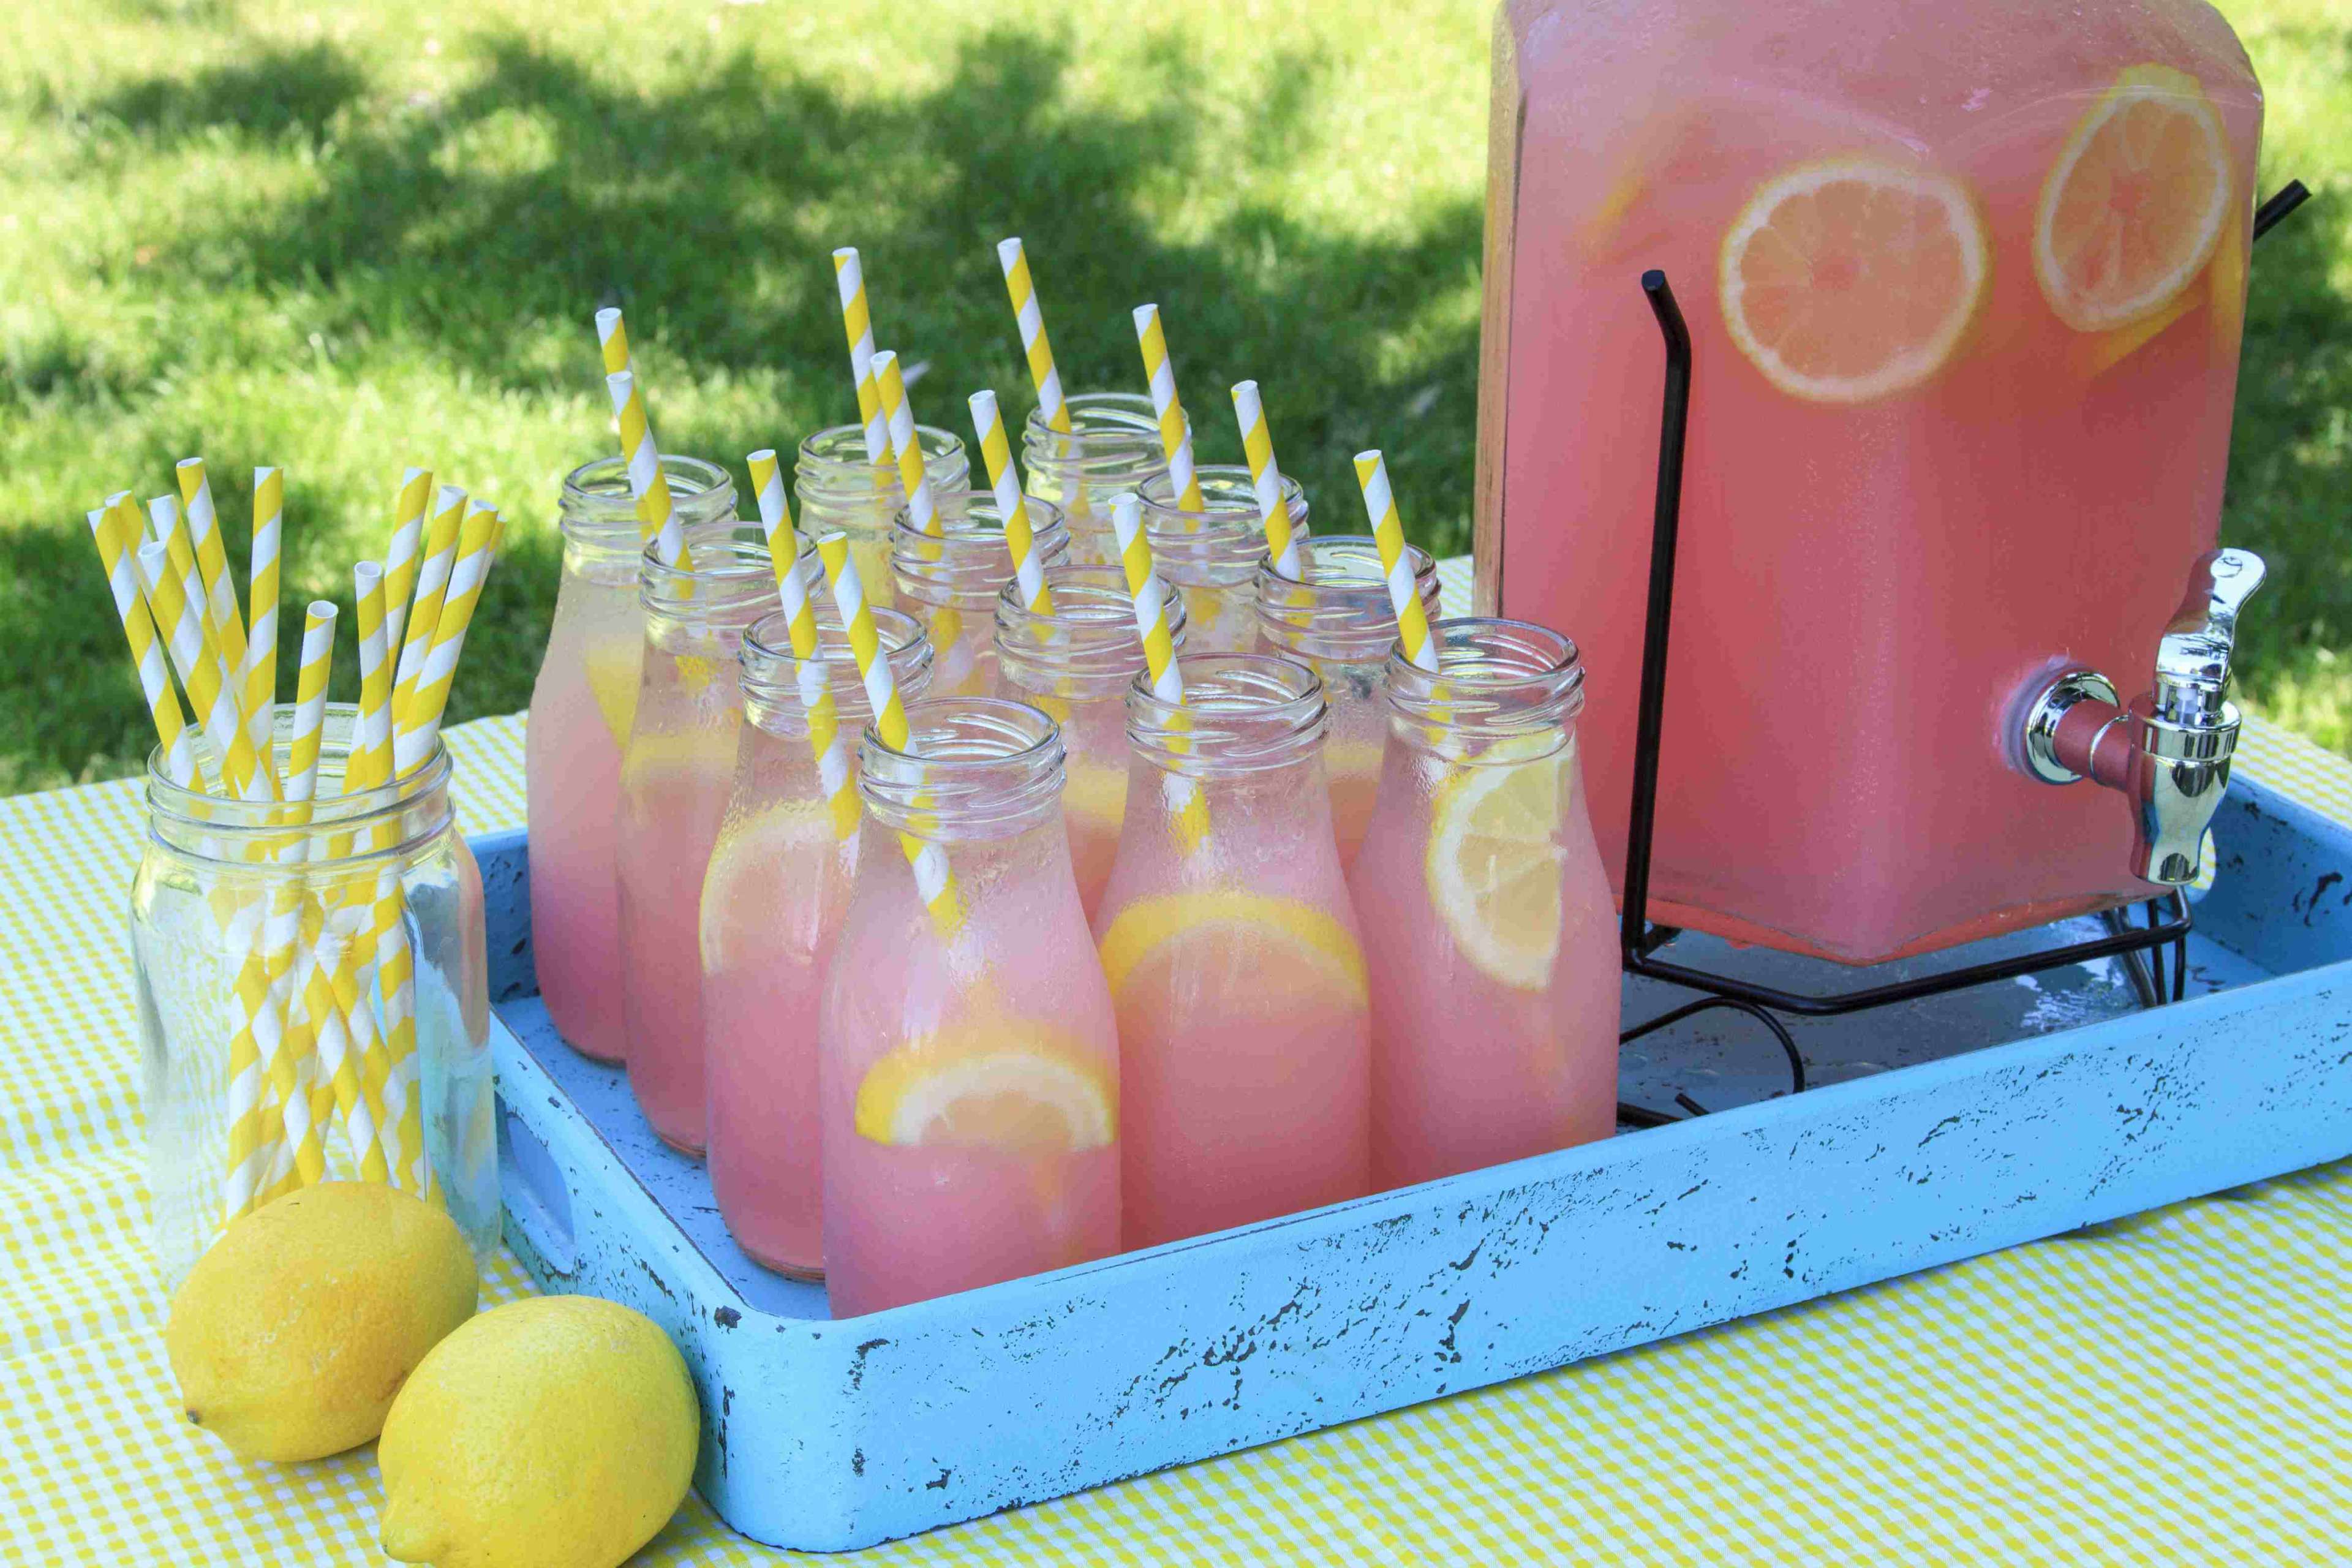 Pink Lemonade at Picnic in Park